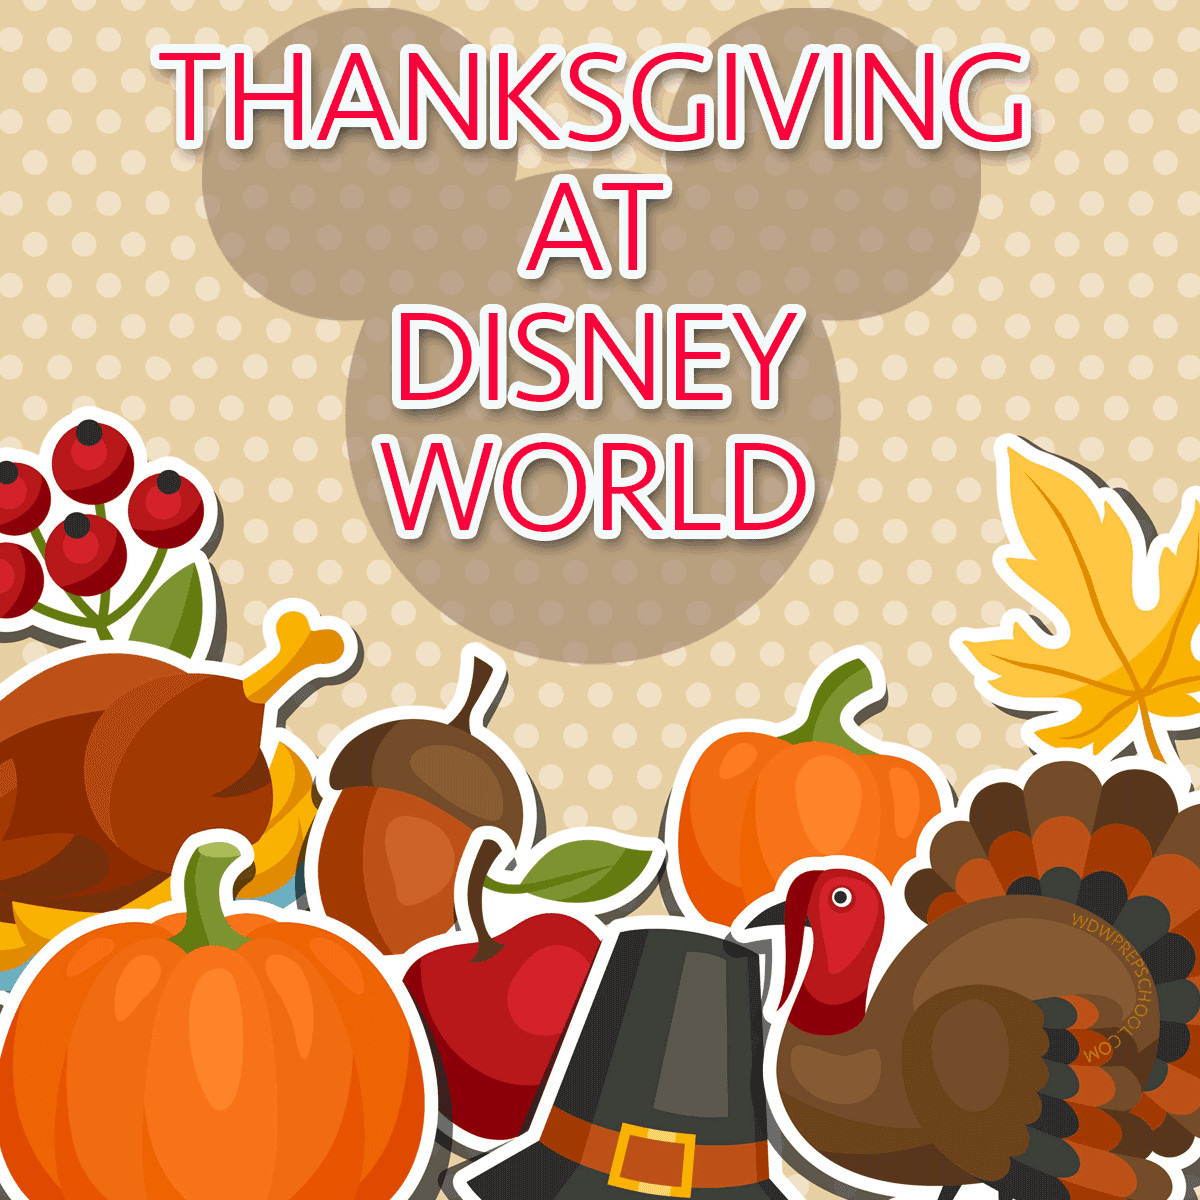 Thanksgiving Dinner Restaurants 2019
 Tips for Thanksgiving at Disney World in 2017